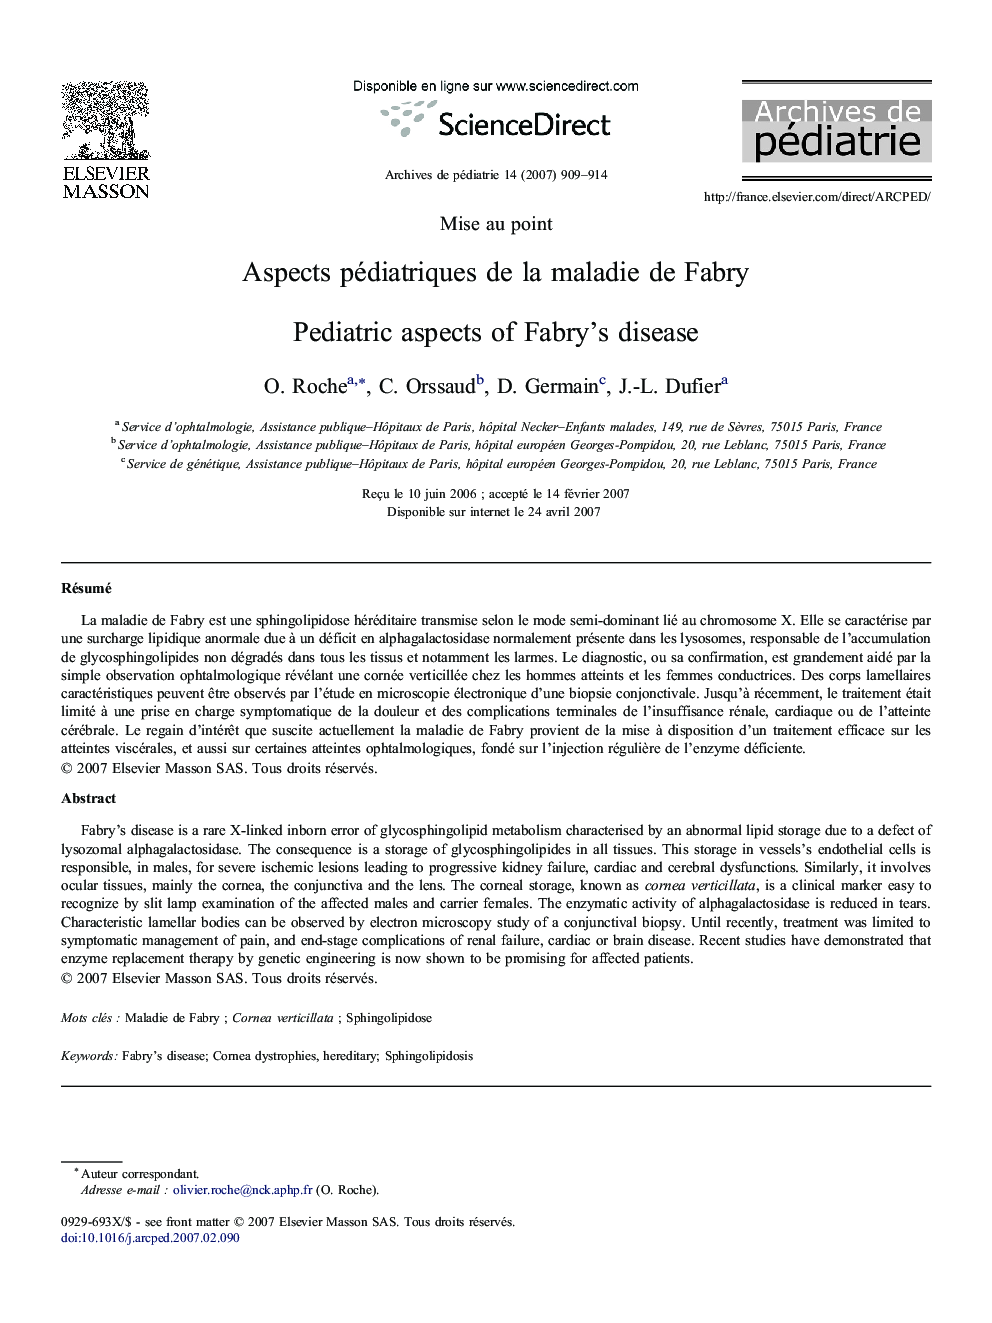 Aspects pédiatriques de la maladie de Fabry